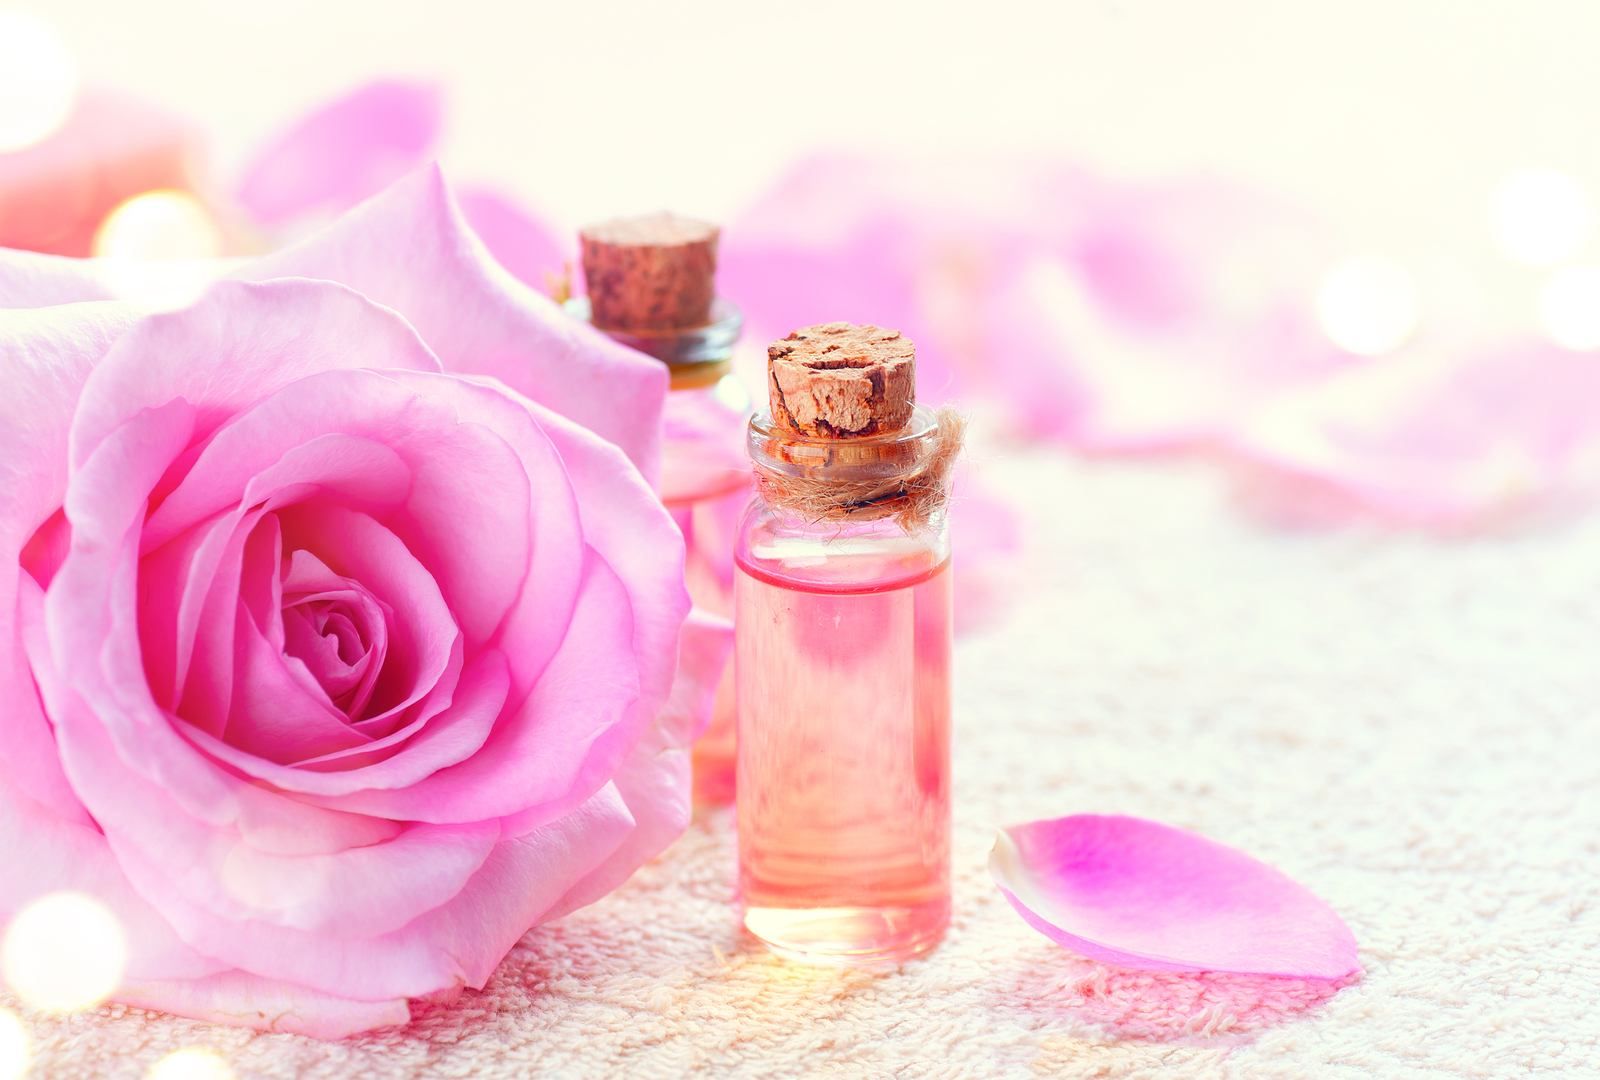 Inilah 8 Jenis Bunga yang Sering Dijadikan Aroma untuk Parfum, Ada Wangi Parfum Milikmu?